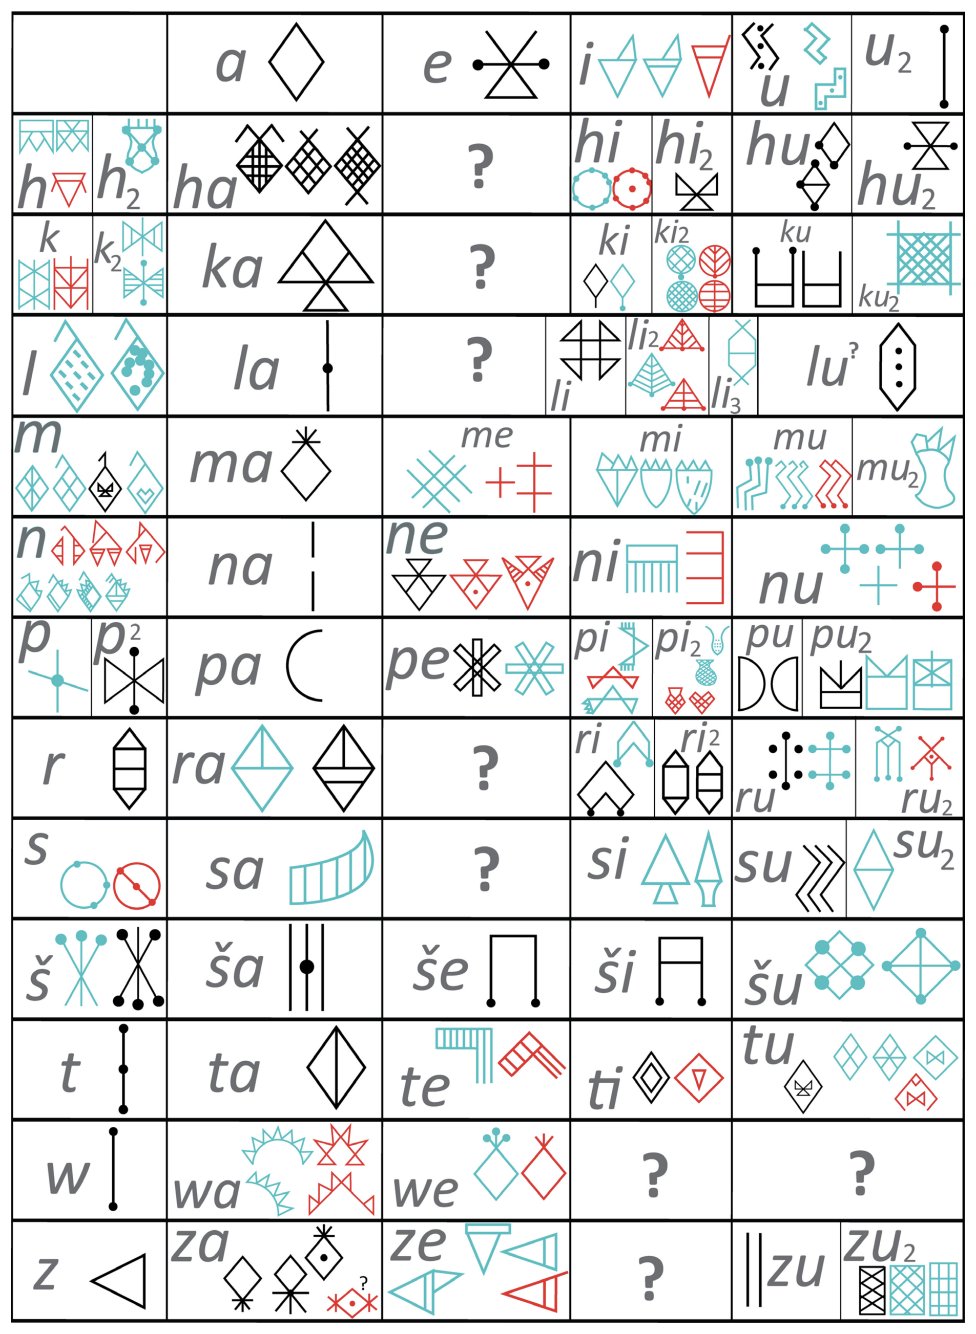 Grid daripada 72 tanda alfa-suku kata yang ditafsirkan berdasarkan sistem transliterasi Linear Elamite. Varian grafik yang paling biasa ditunjukkan untuk setiap tanda. Tanda biru dibuktikan di barat daya Iran, merah di tenggara Iran. Tanda-tanda hitam adalah perkara biasa di kedua-dua kawasan. F. Desset